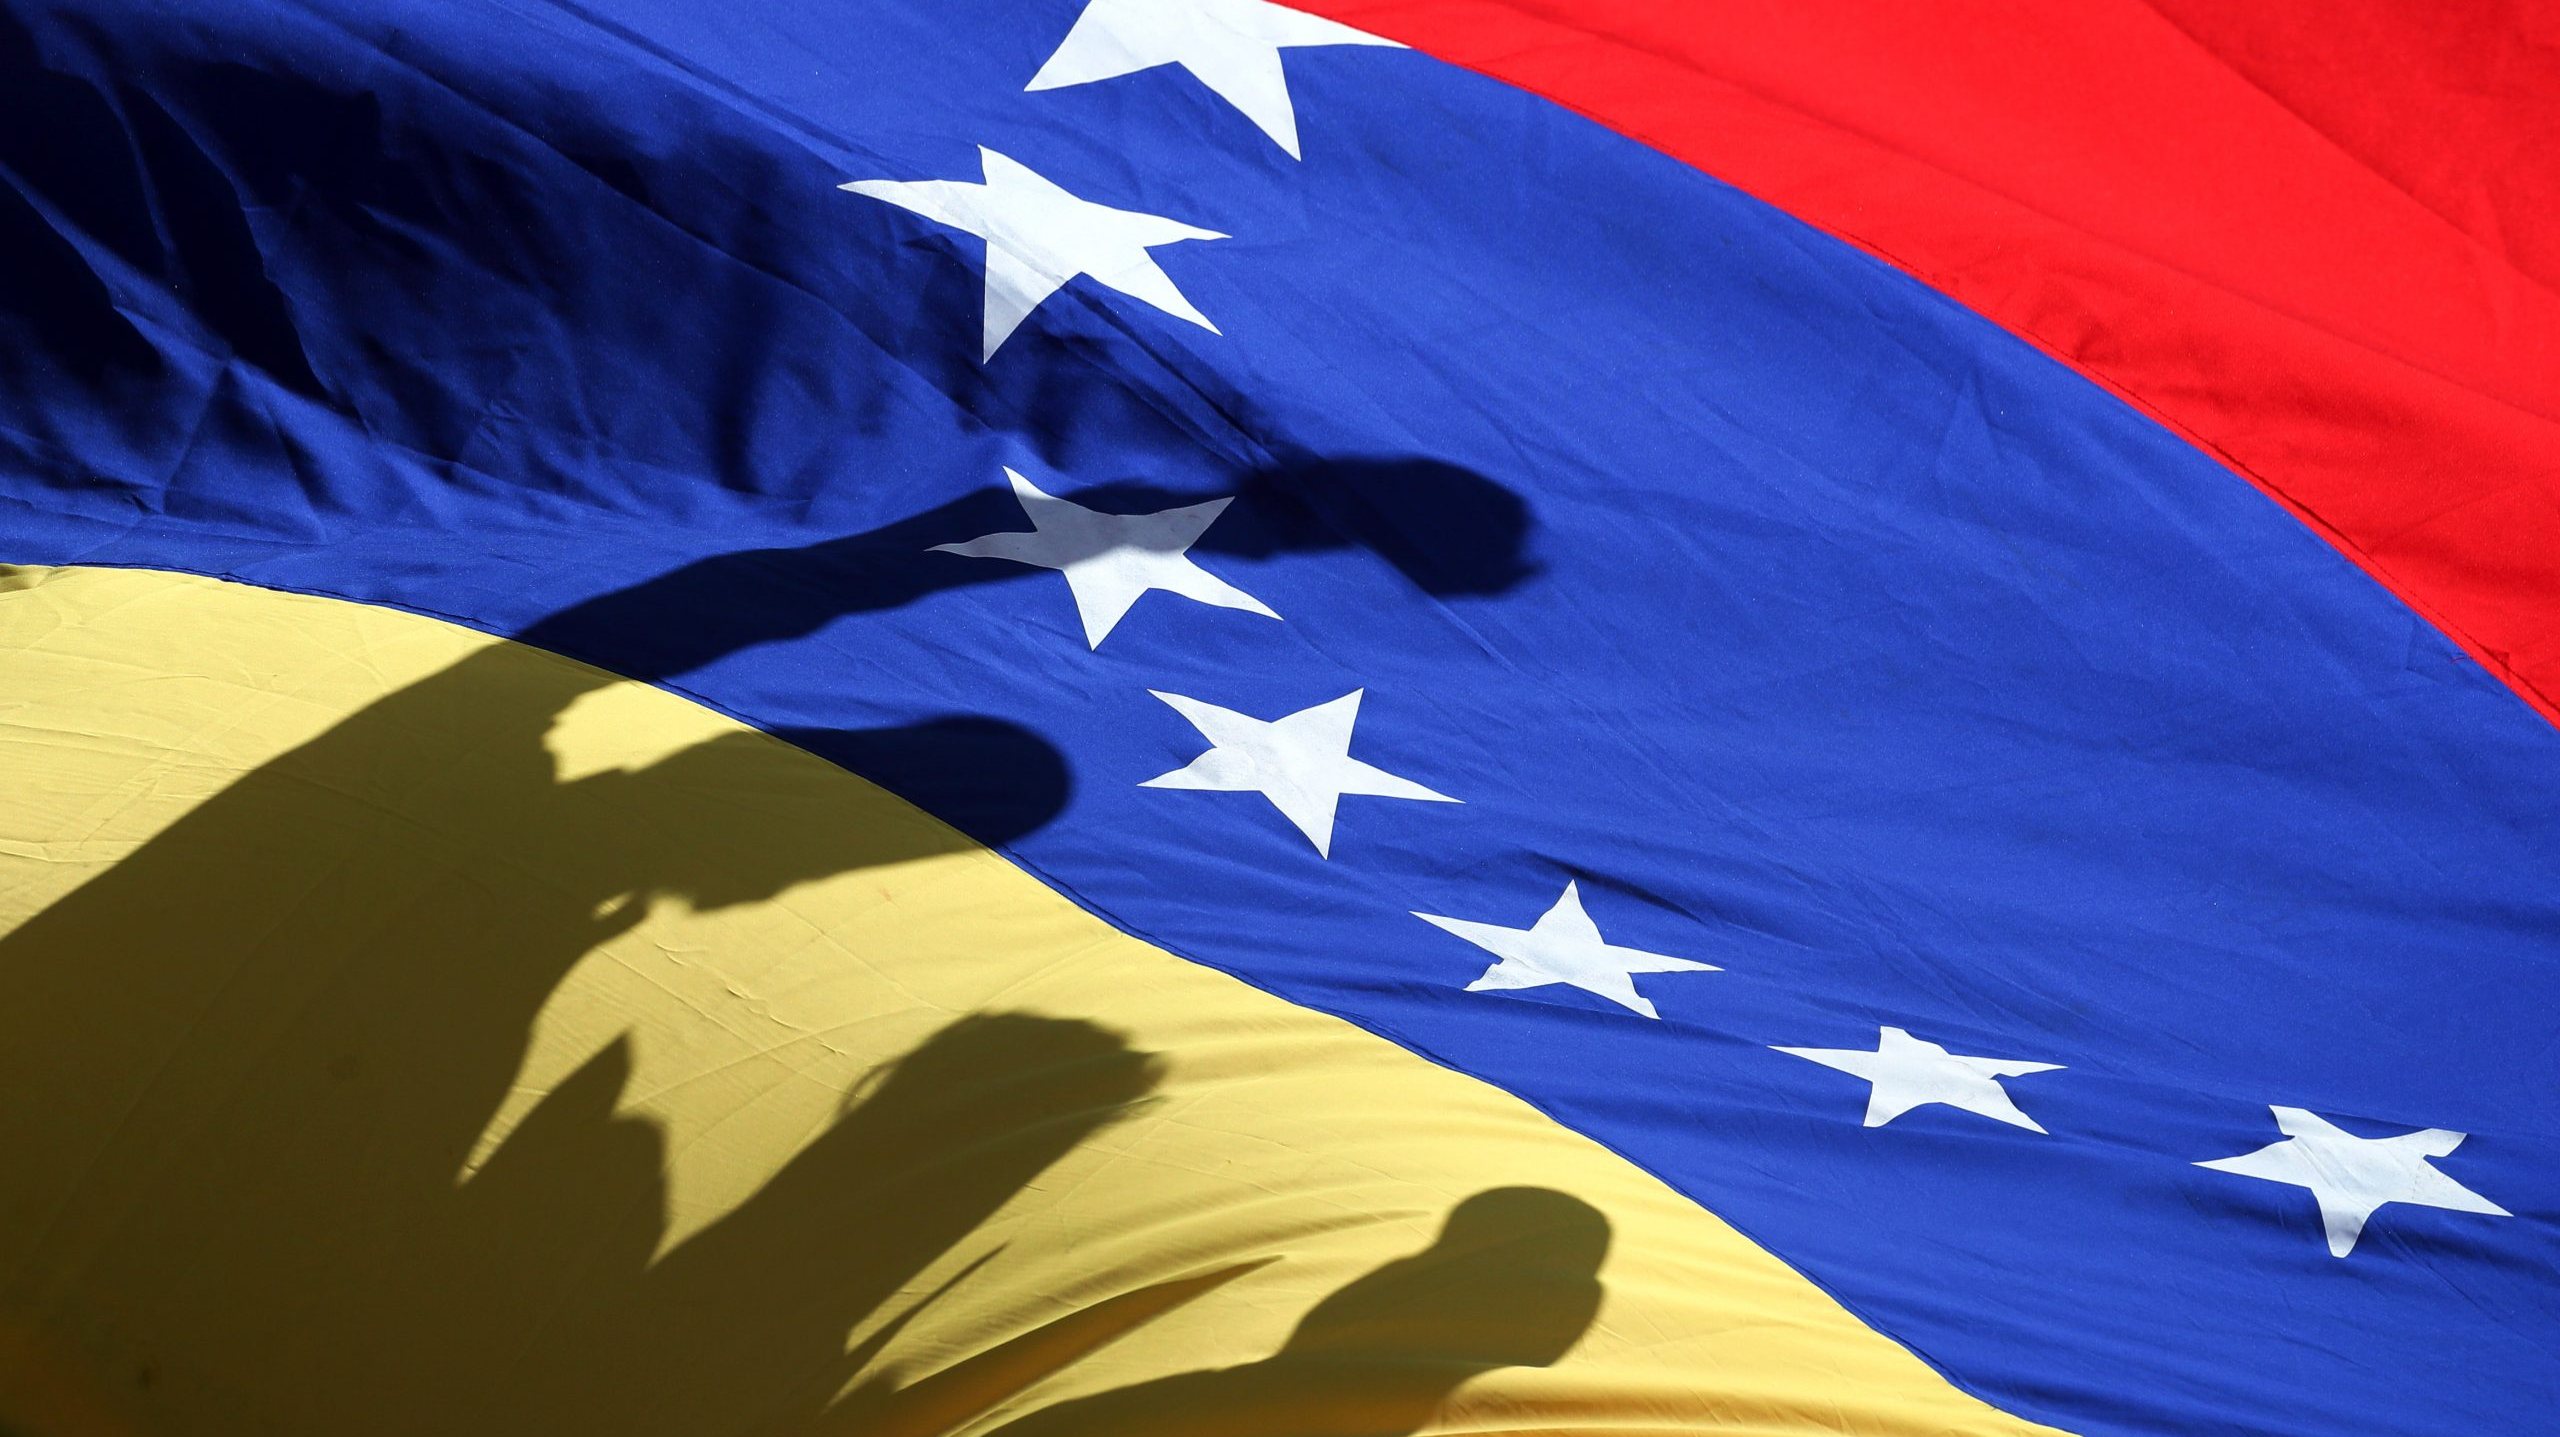 Os dois cidadãos venezuelanos foram &quot;executados extrajudicialmente por agentes da polícia no estado de Falcón&quot;, centro-norte do país